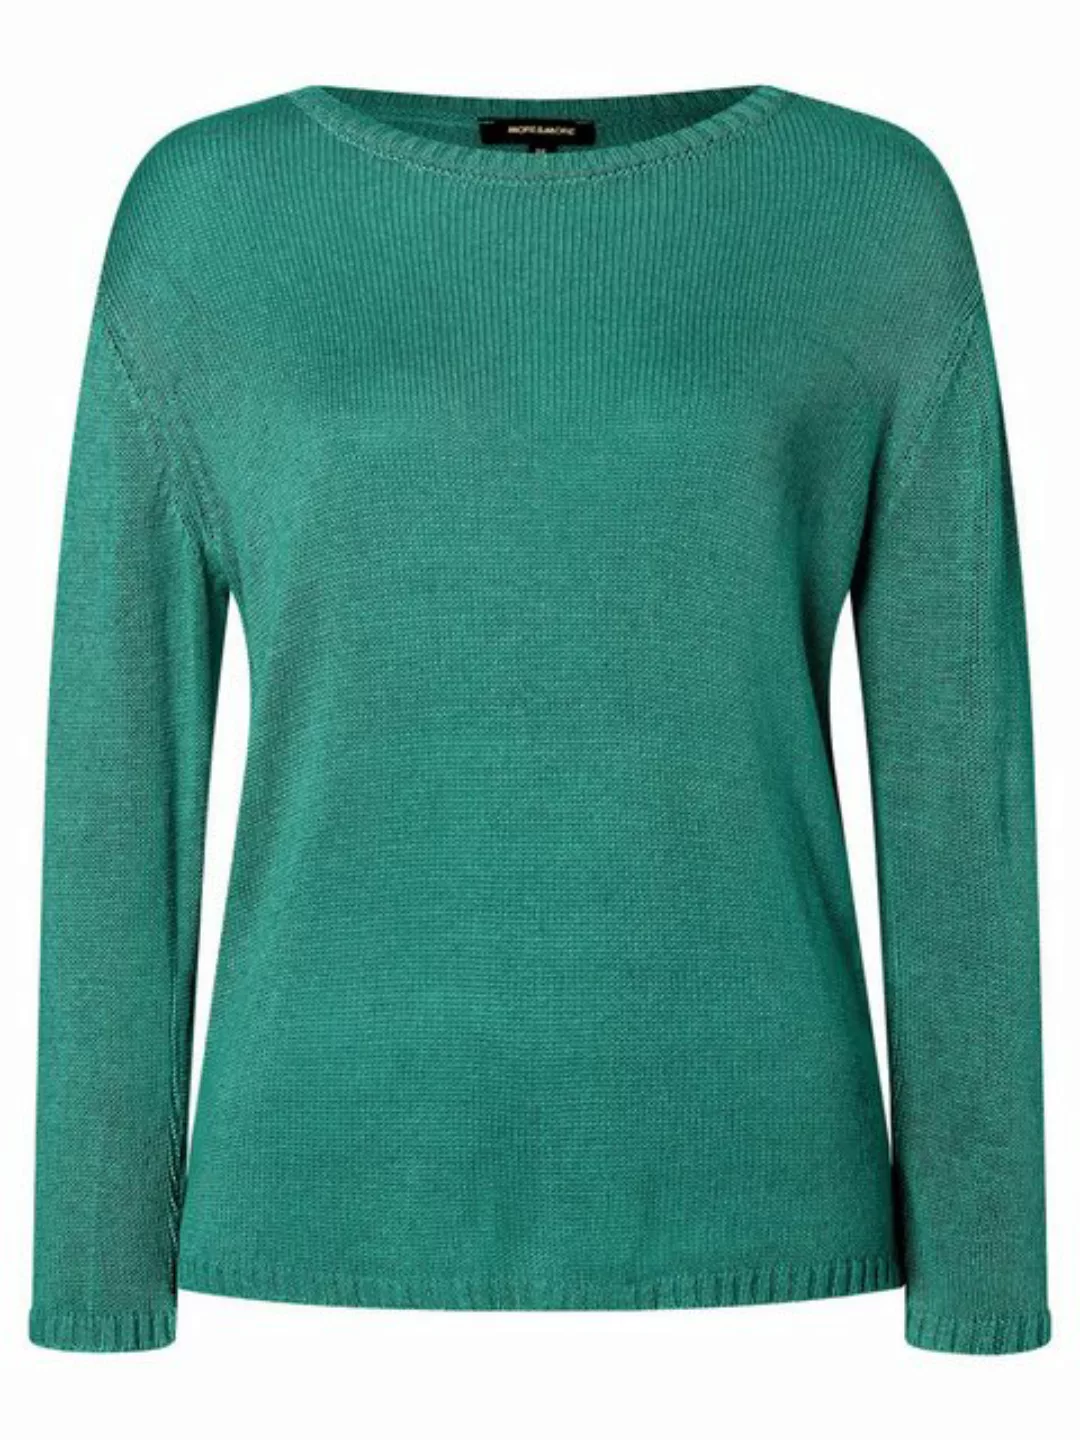 Pullover, summergarden green, Sommer-Kollektion günstig online kaufen